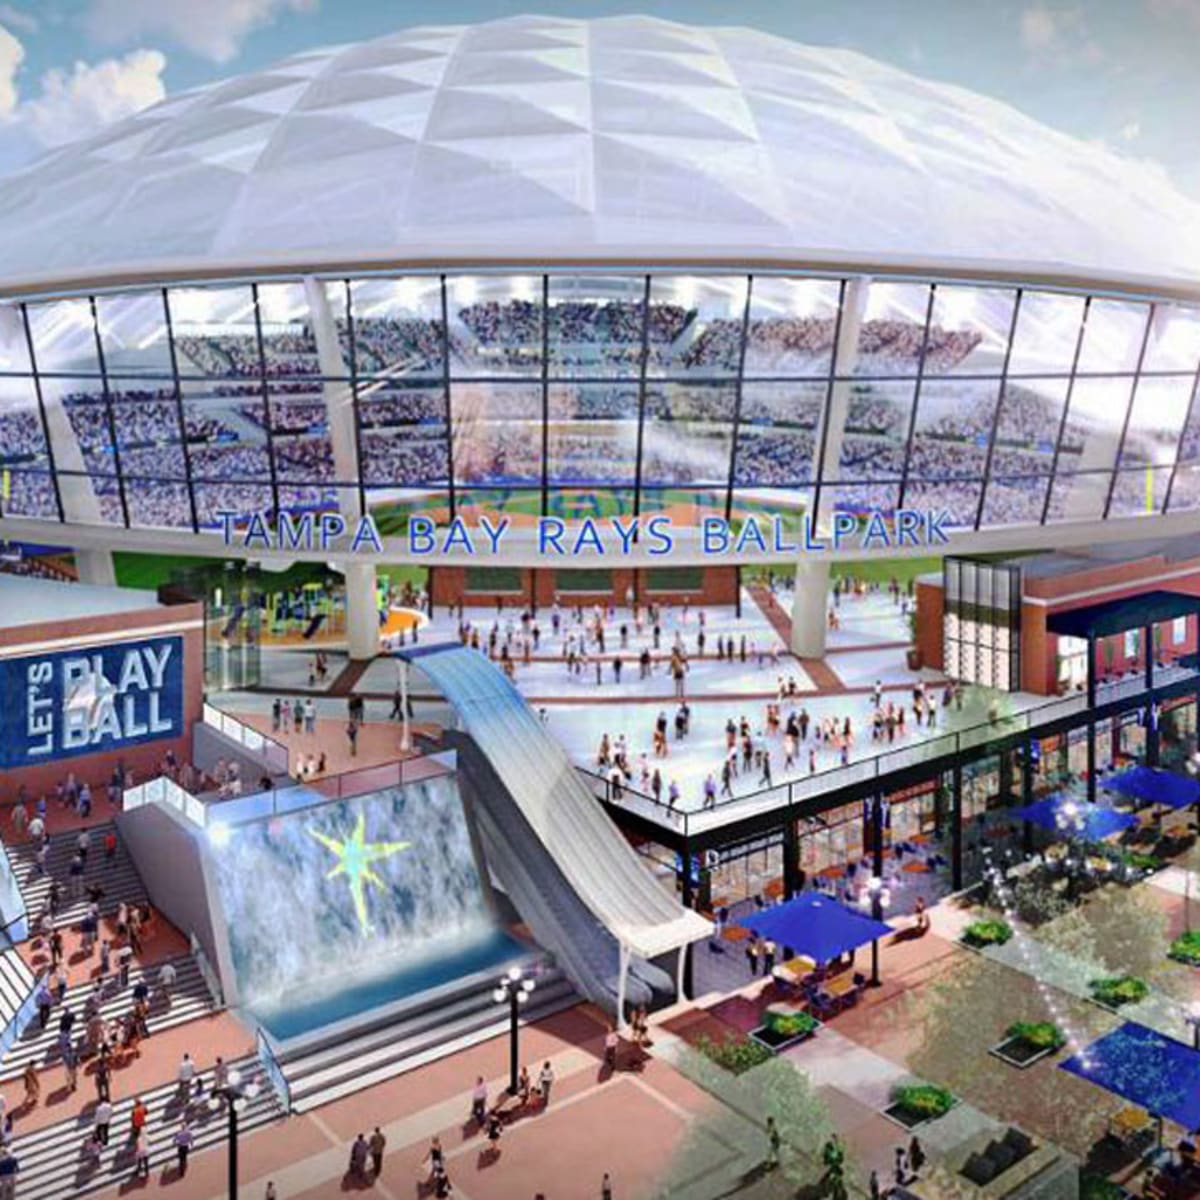 Rays Unveil New Stadium Design